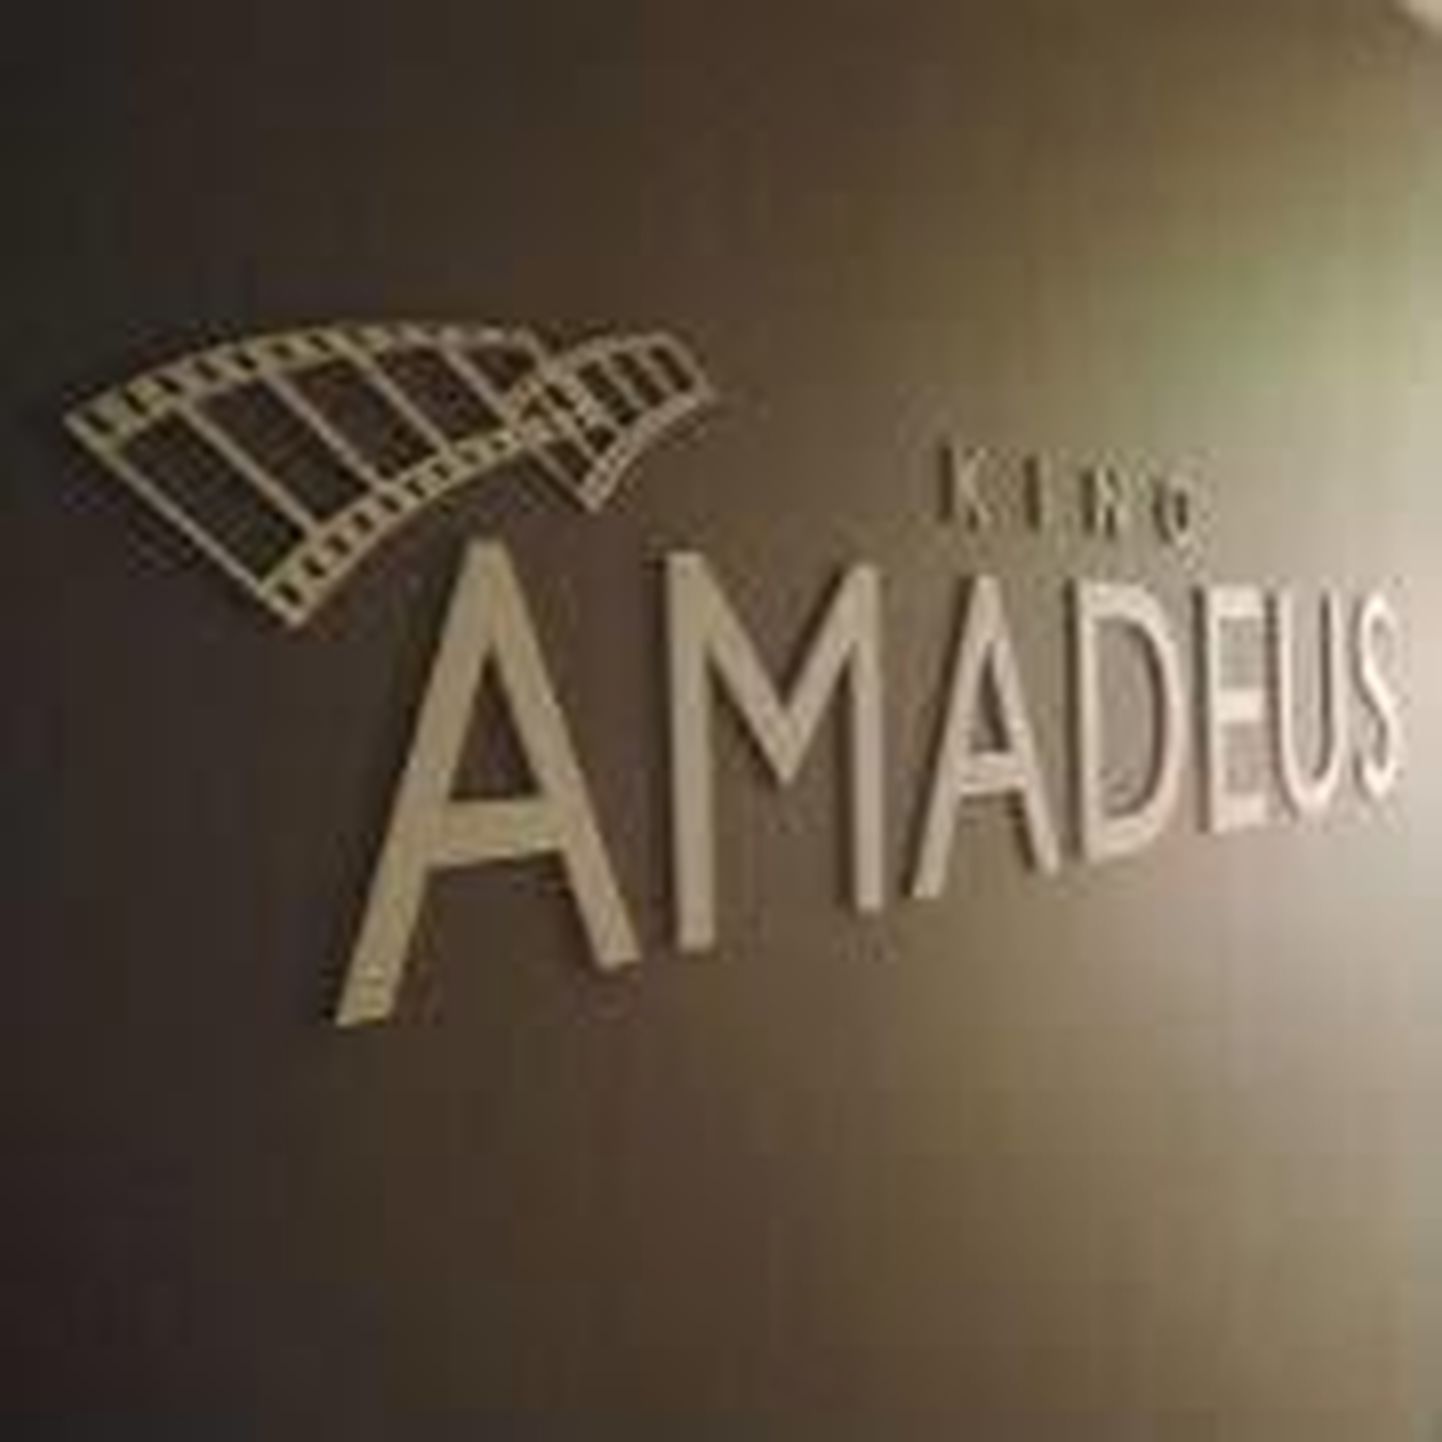 Kino Amadeus avab taas uksed.